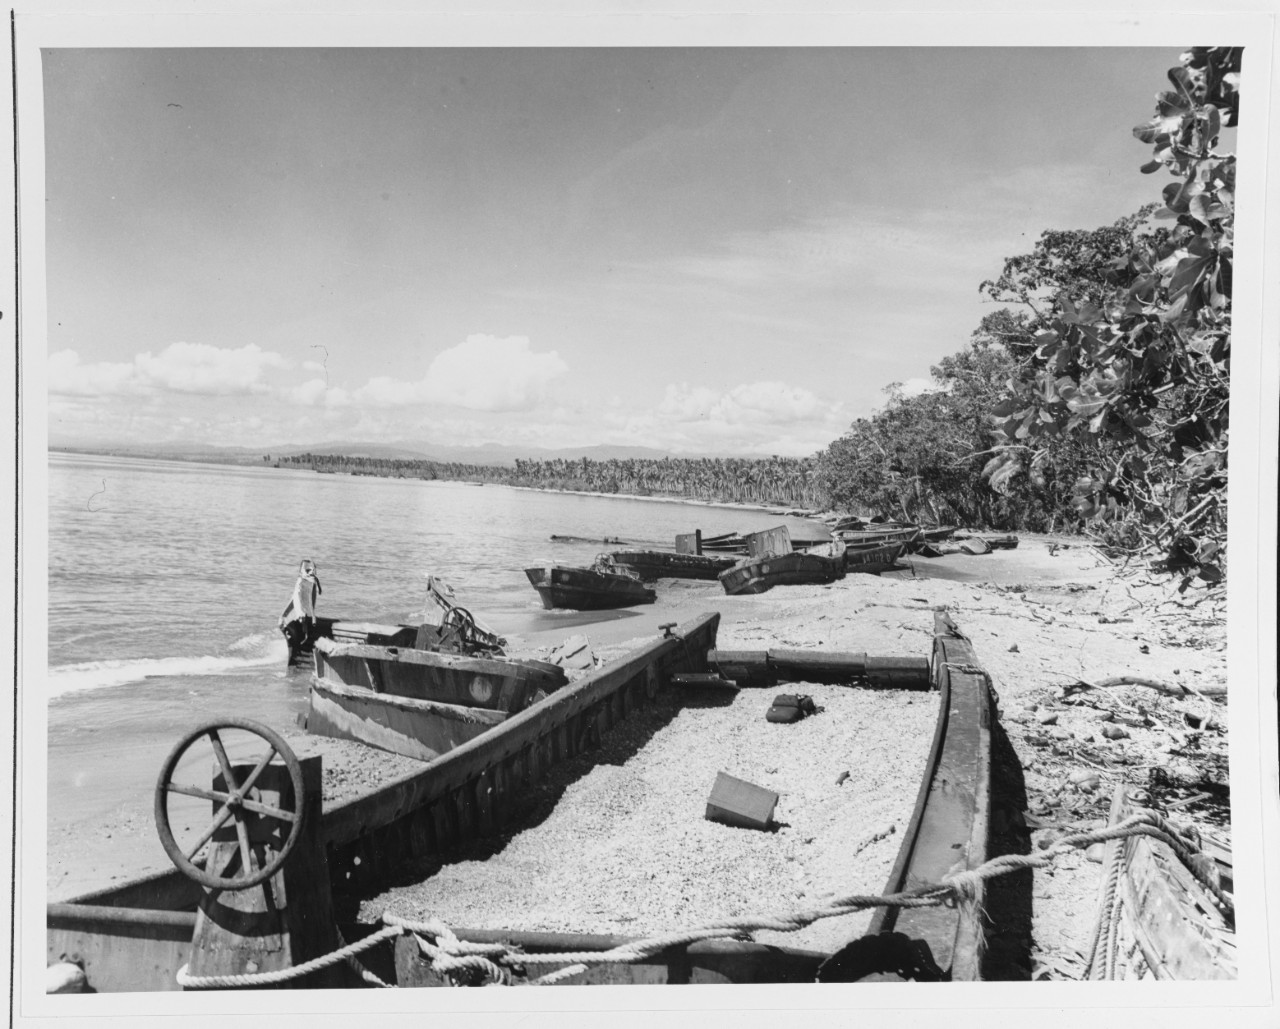 Guadalcanal Campaign, 1942-43